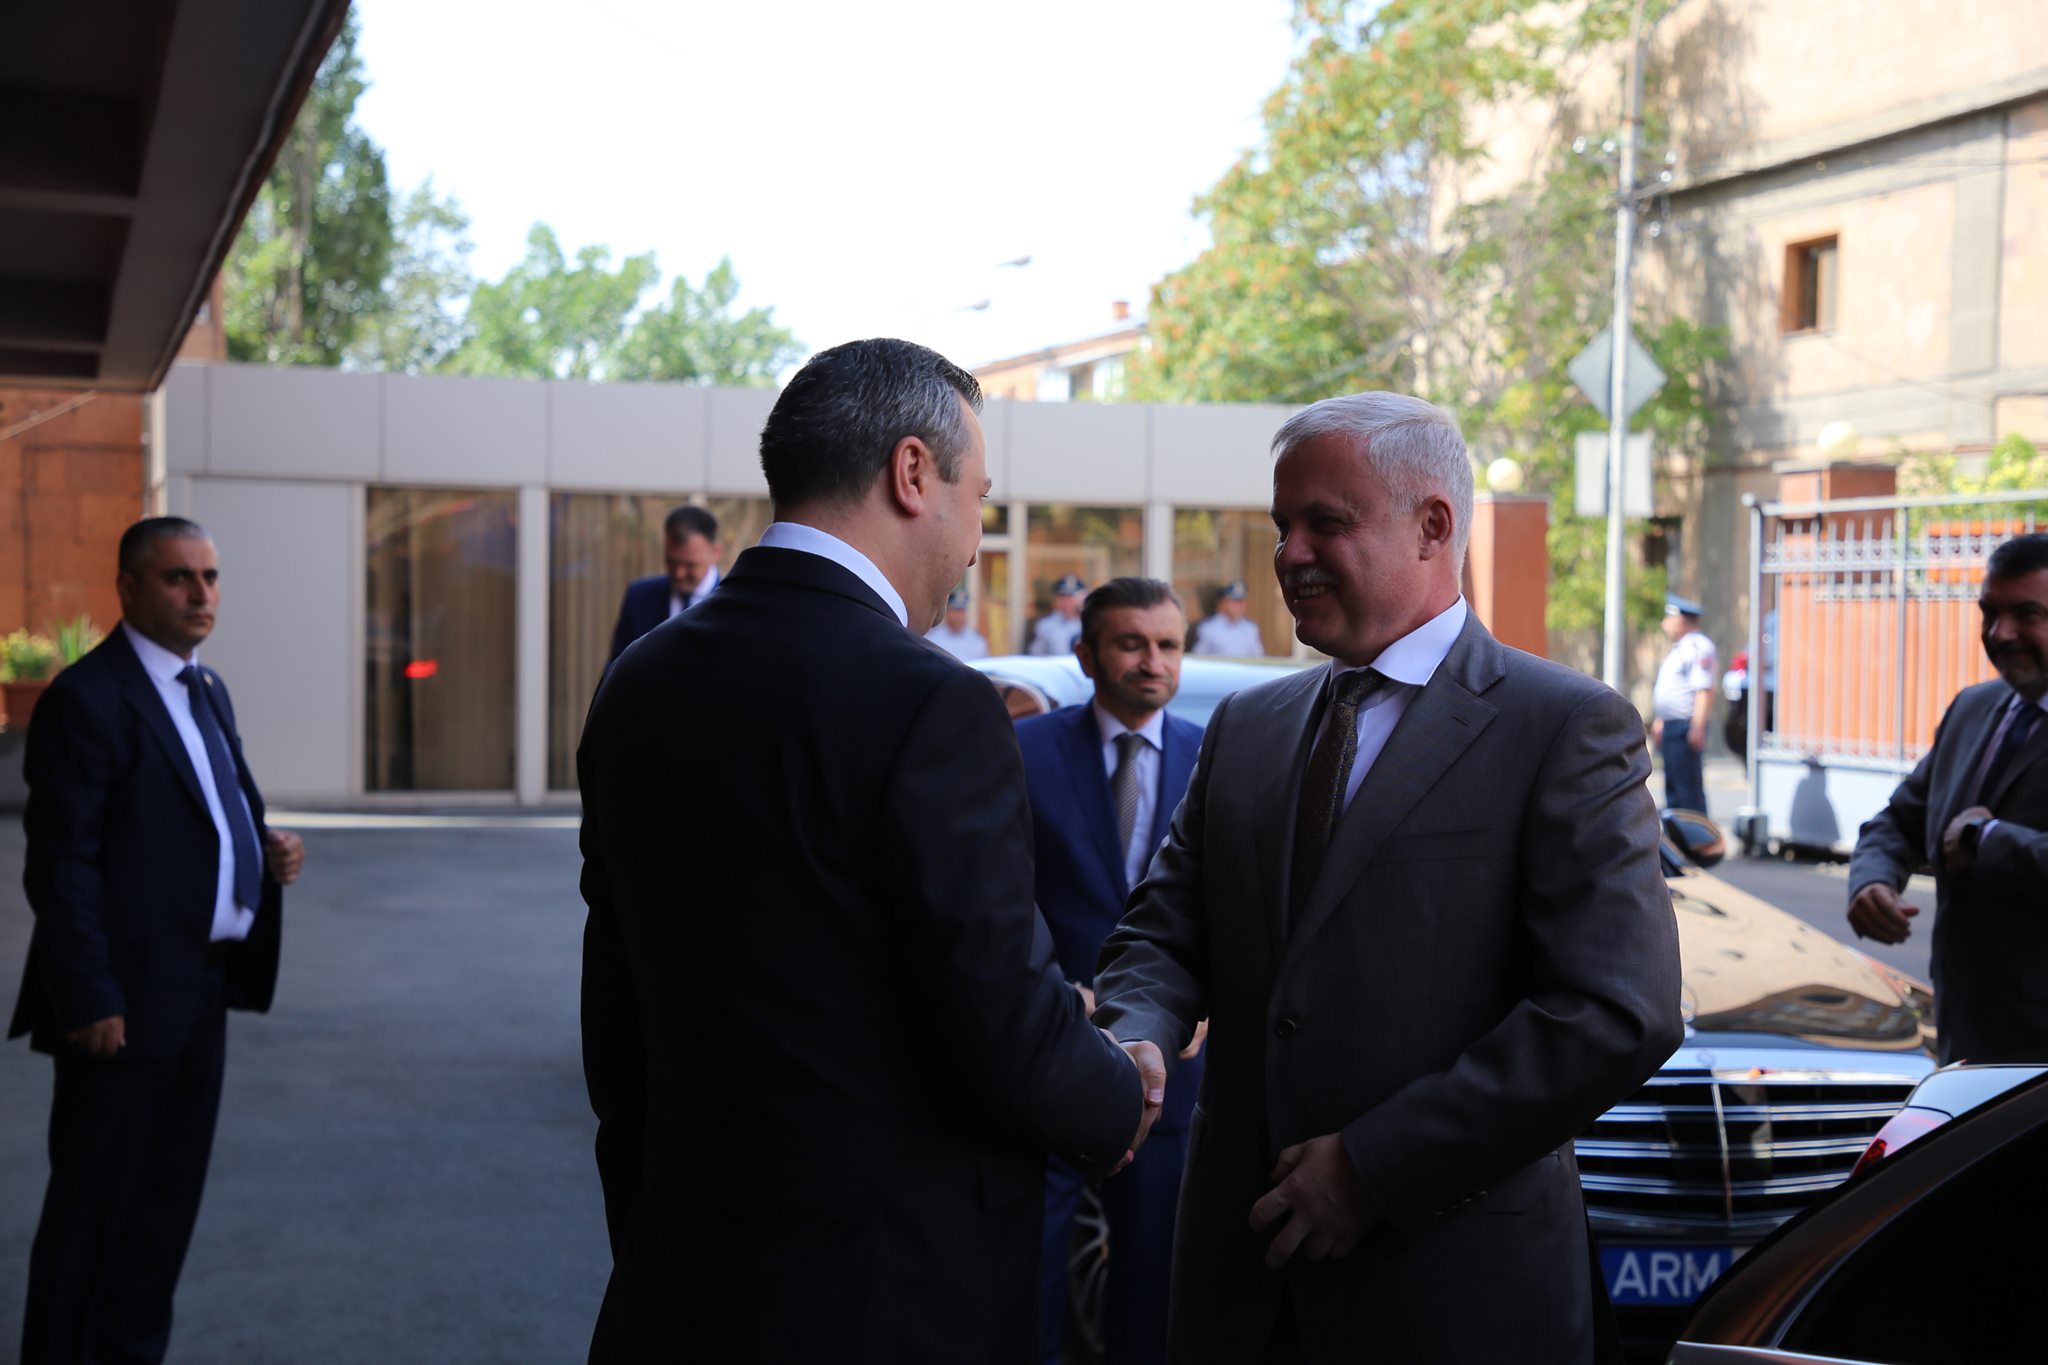 ՀԱՊԿ գլխավոր քարտուղար Զասն այցելել է ՀՀ անվտանգության խորհրդի գրասենյակ